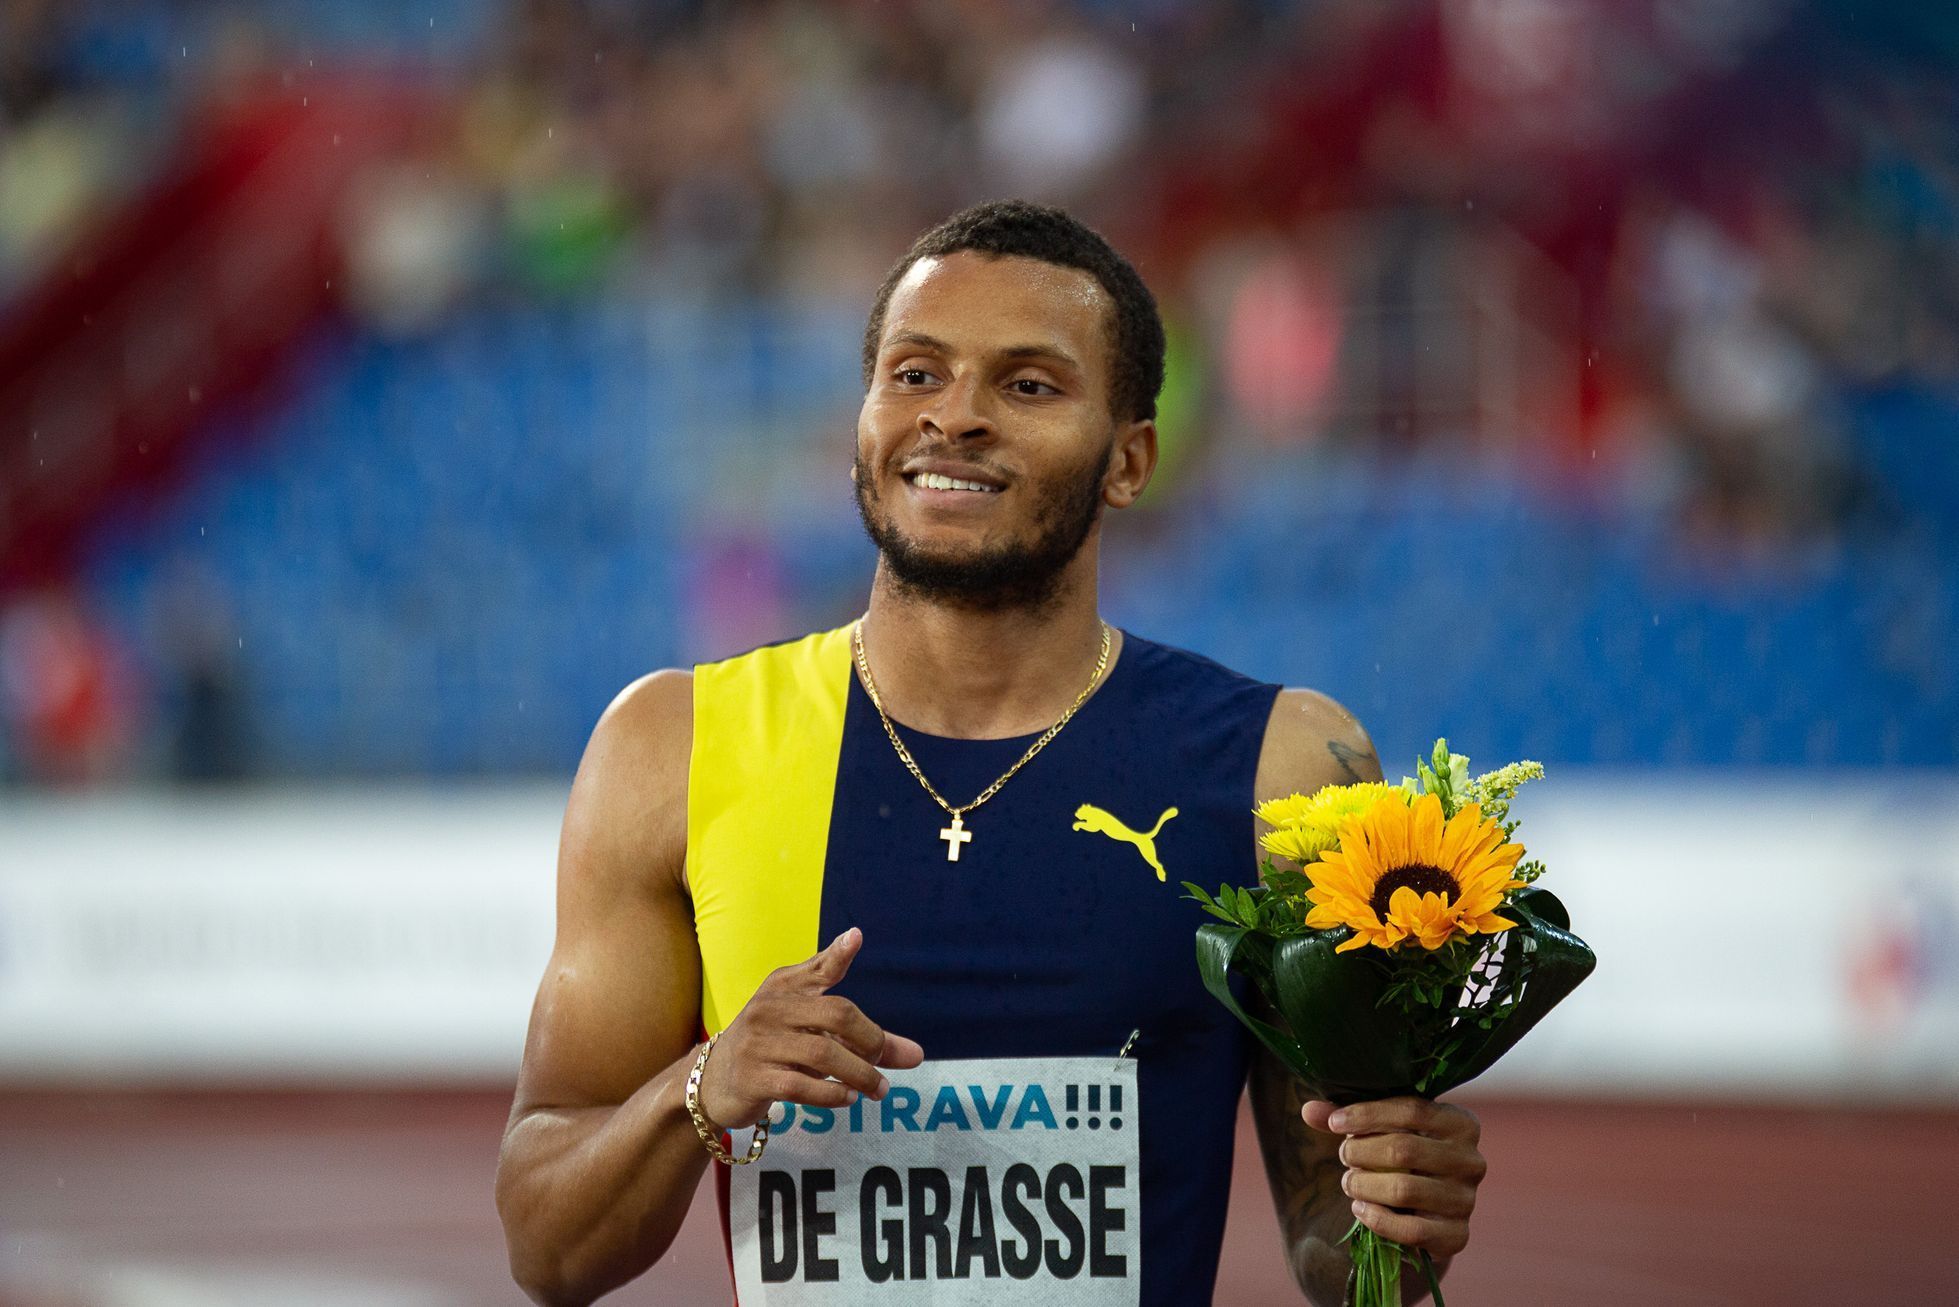 Zlatá tretra 2019: Vítěz závodu na 200 metrů Kanaďan Andre De Grasse